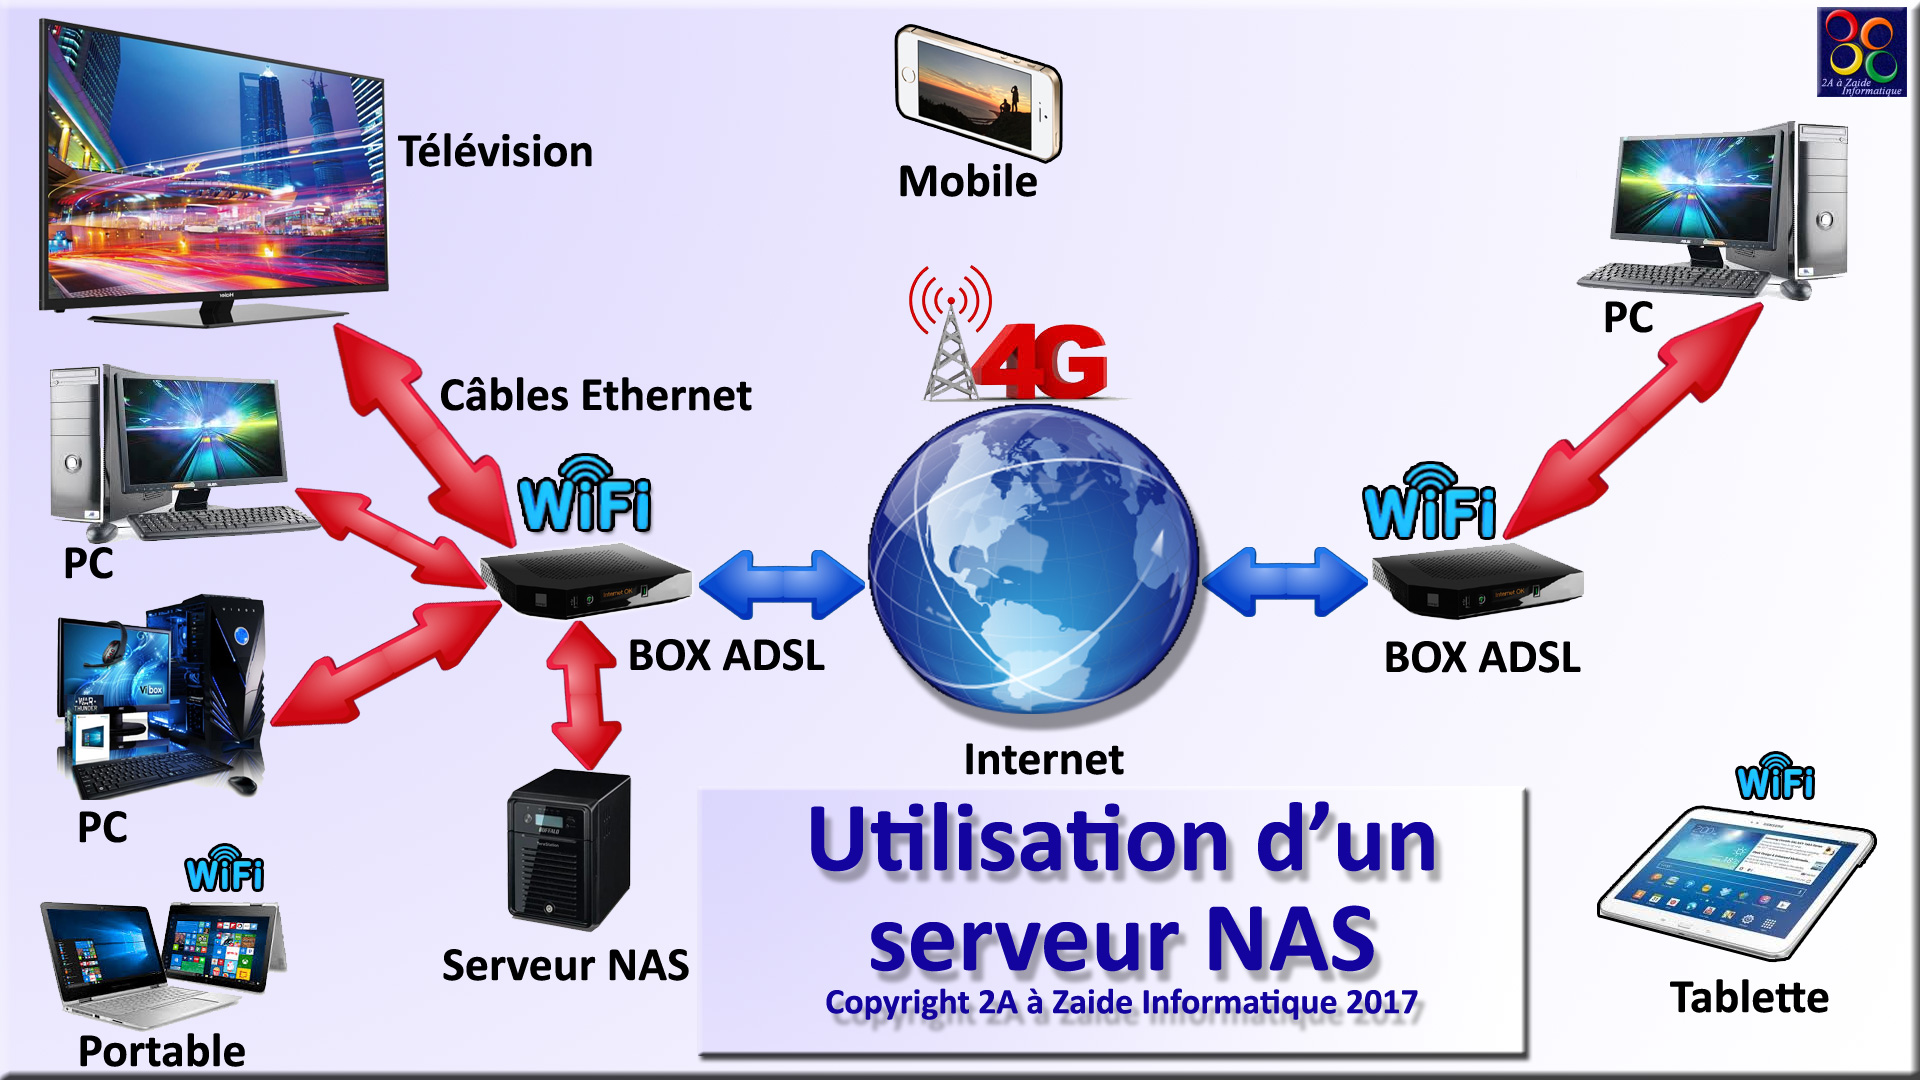 Serveur NAS : tout savoir sur le serveur de stockage en réseau